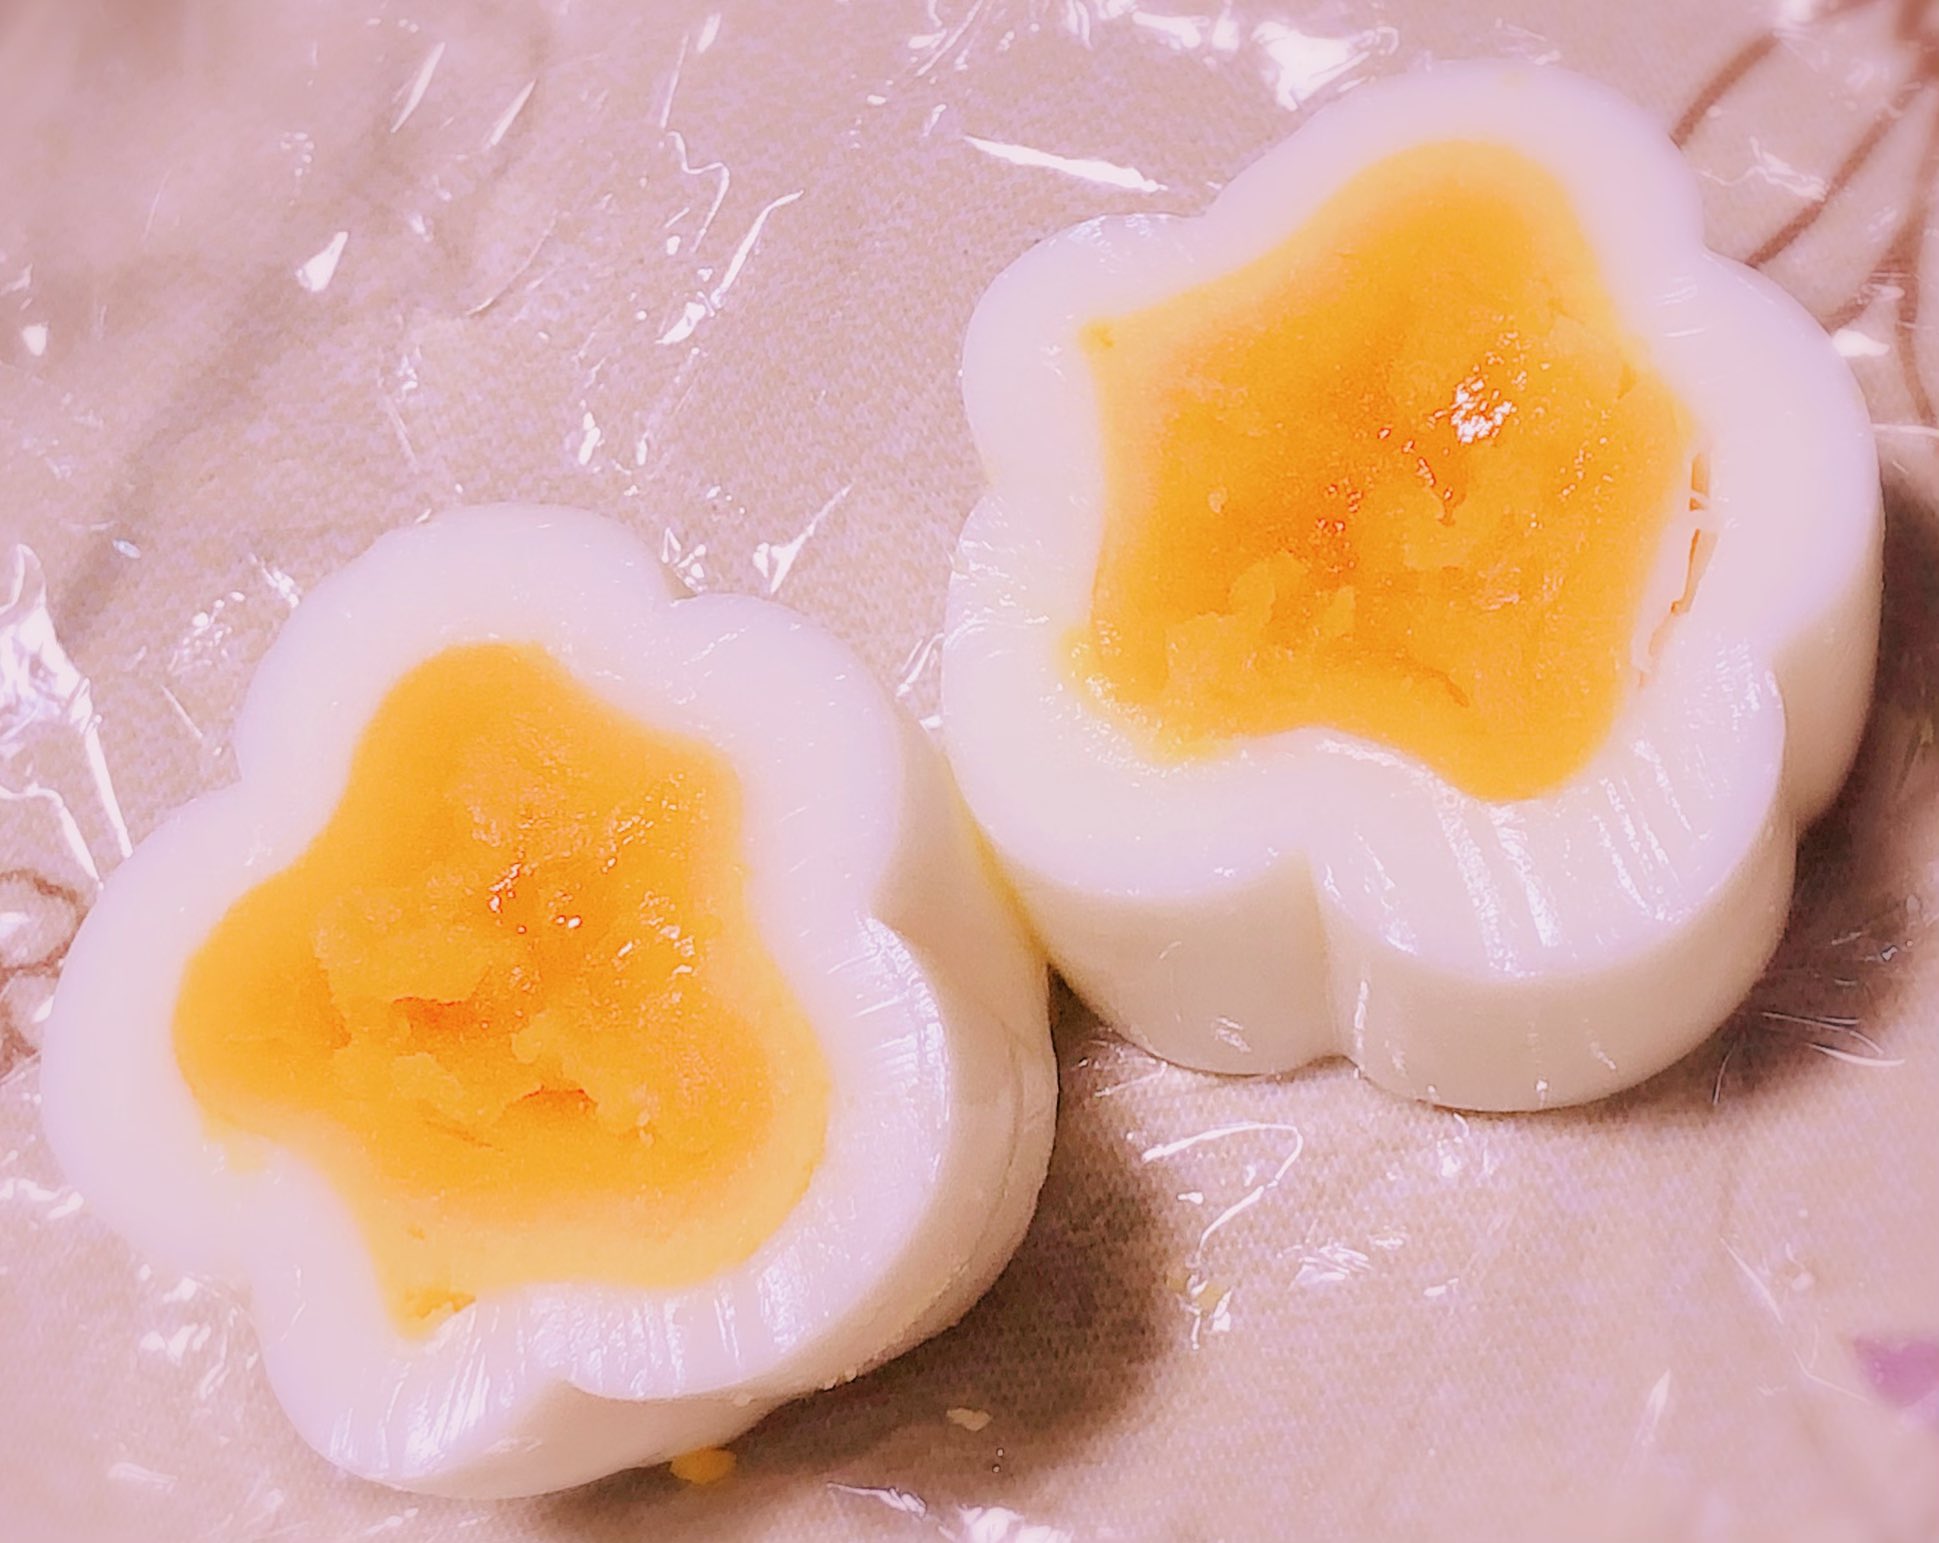 花緒 初めて花の形のゆで卵作りました 中々上手くいかない 卵買ってきて練習しよう ゆで卵 花形 料理 料理記録